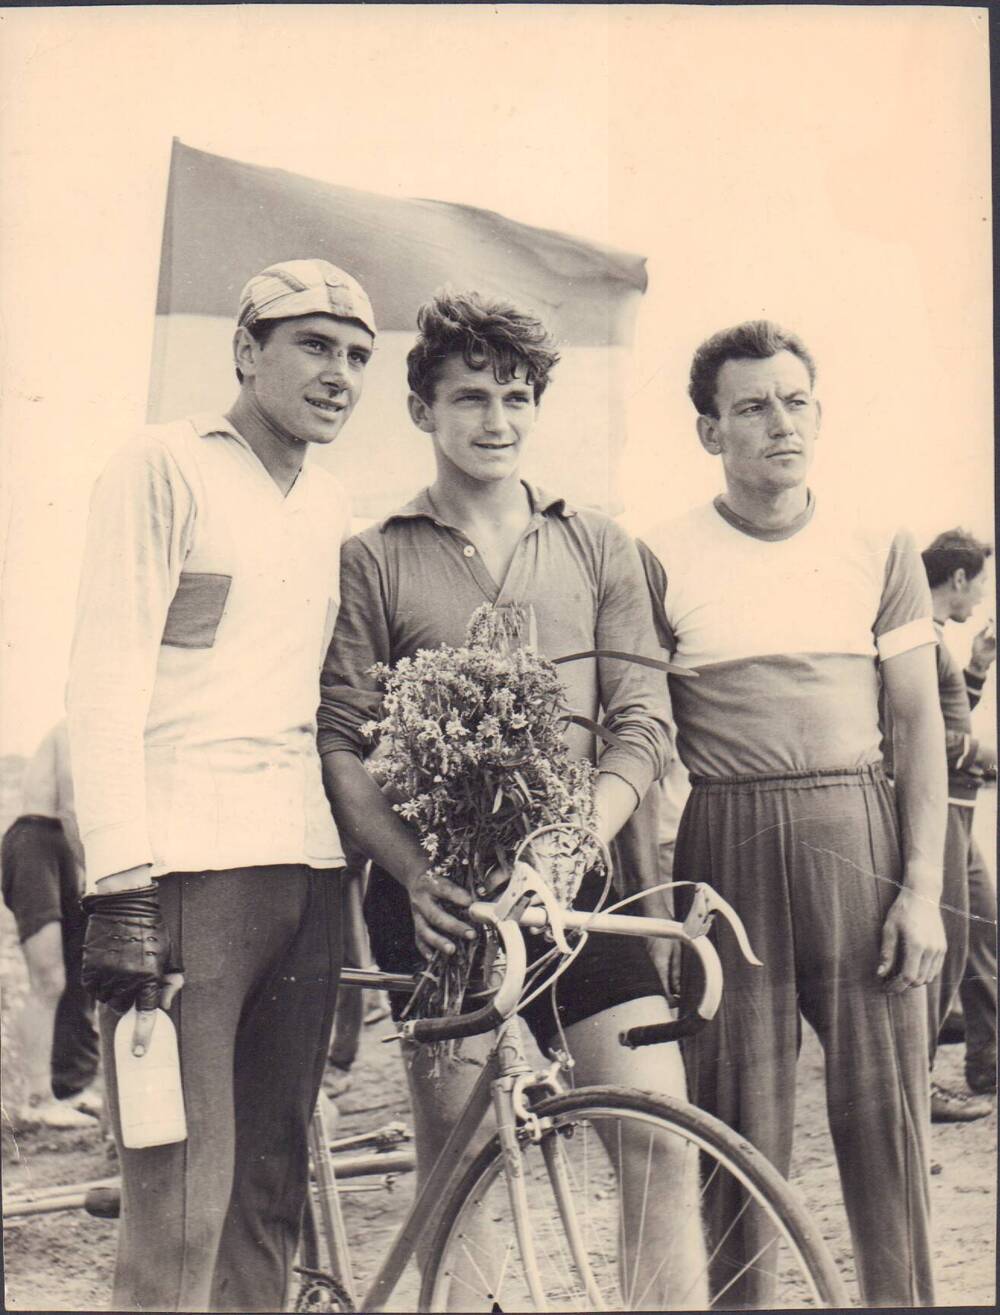 Фотография. Чемпионы области по велоспорту - Авилкин А. (г.Мичуринск), Власов Е. (г.Тамбов), Белов А. (г.Кирсанов), февраль 1963 года.